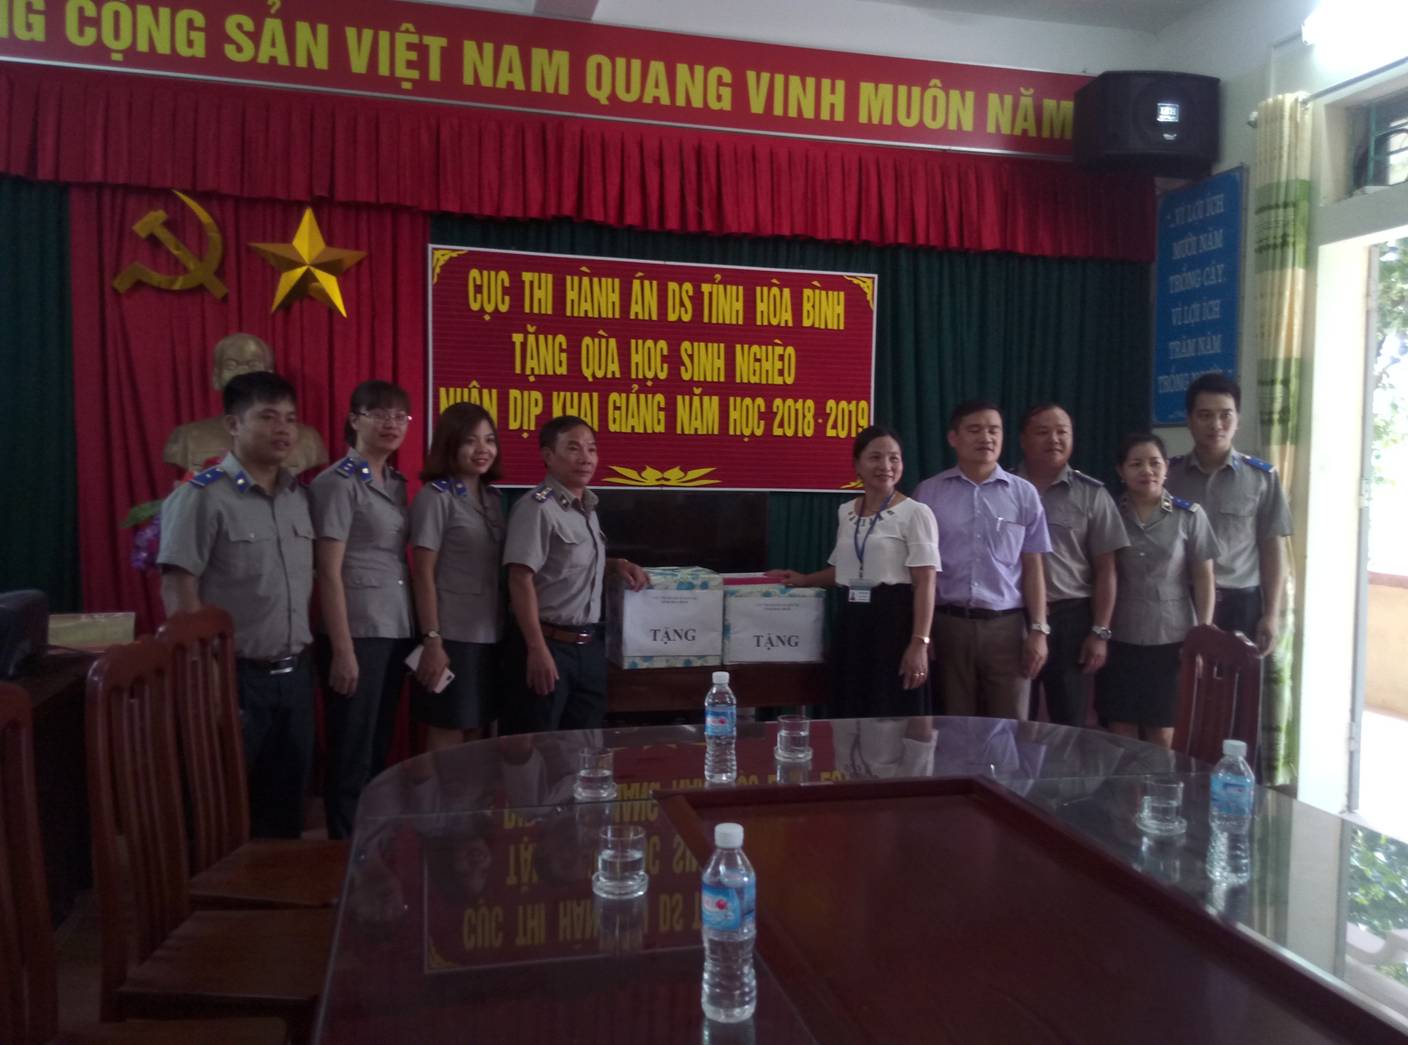 Cục Thi hành án dân sự tỉnh Hòa Bình tổ chức tặng quà Trường Trung học cơ sở và Tiểu Học Xã Kim Tiến, Huyện Kim Bôi, tỉnh Hòa Bình nhân dịp chuẩn bị khai giảng năm học mới